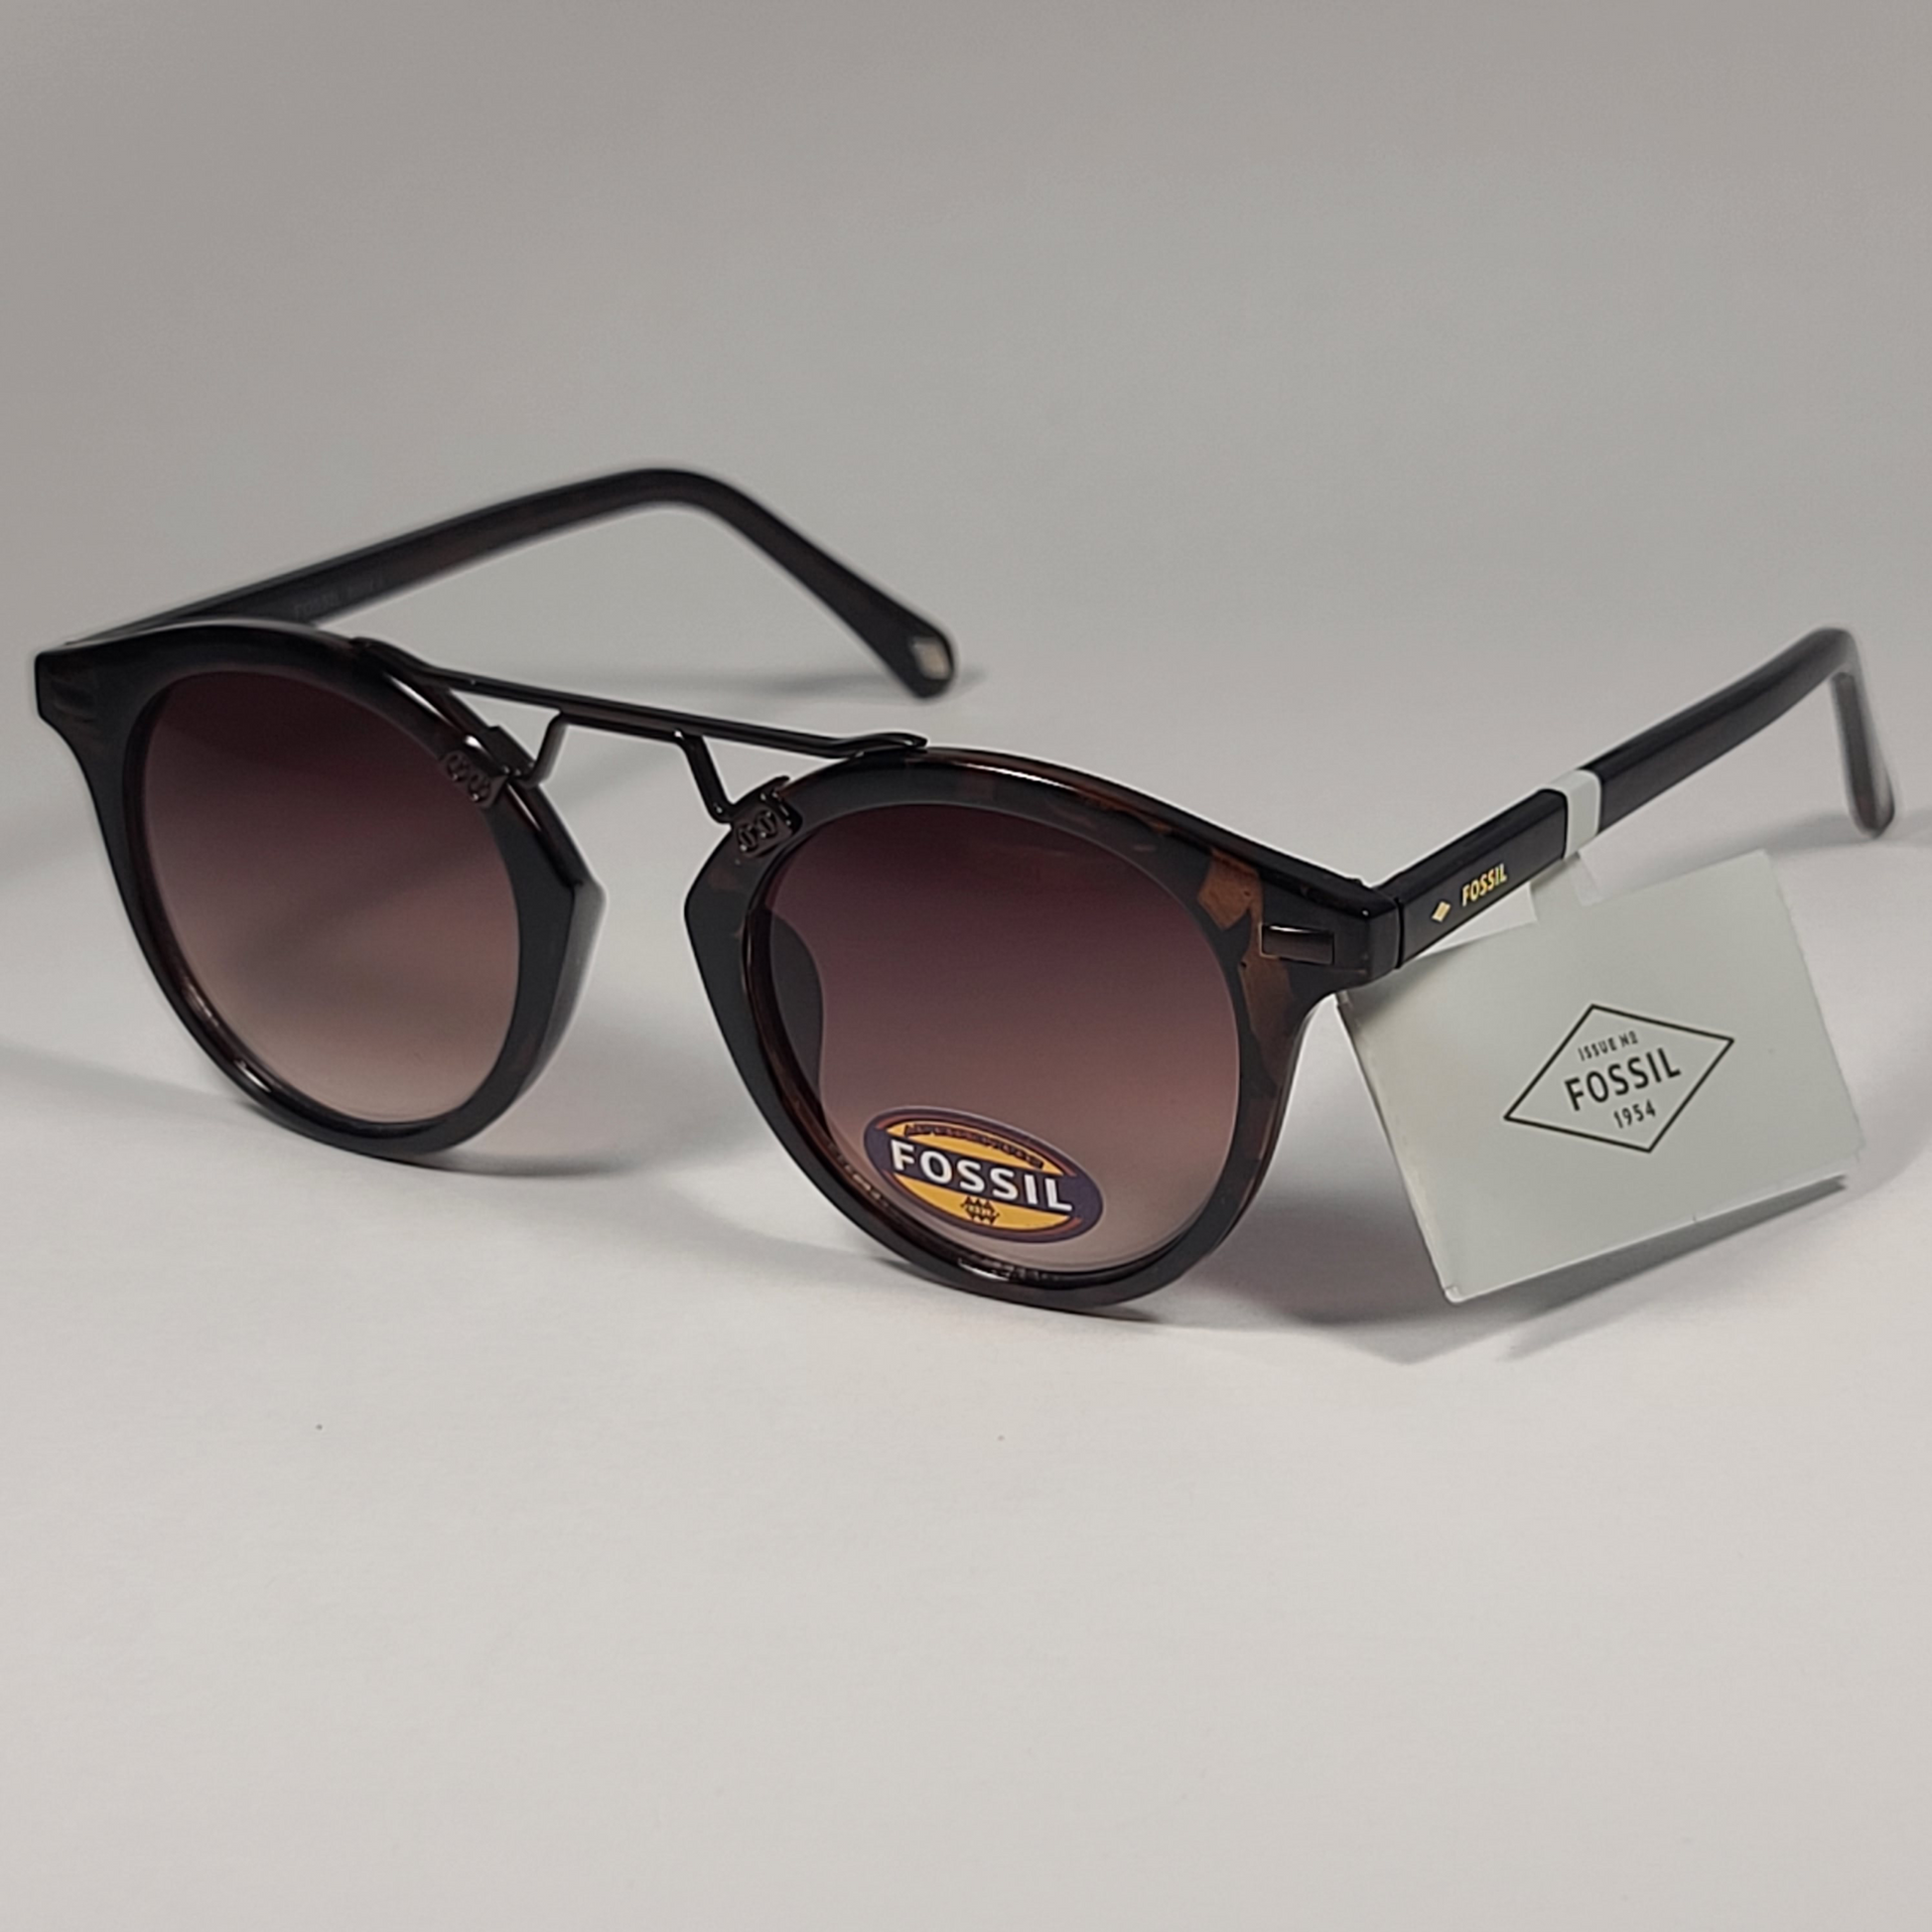 Berkley sunglasses ber003 - Gem